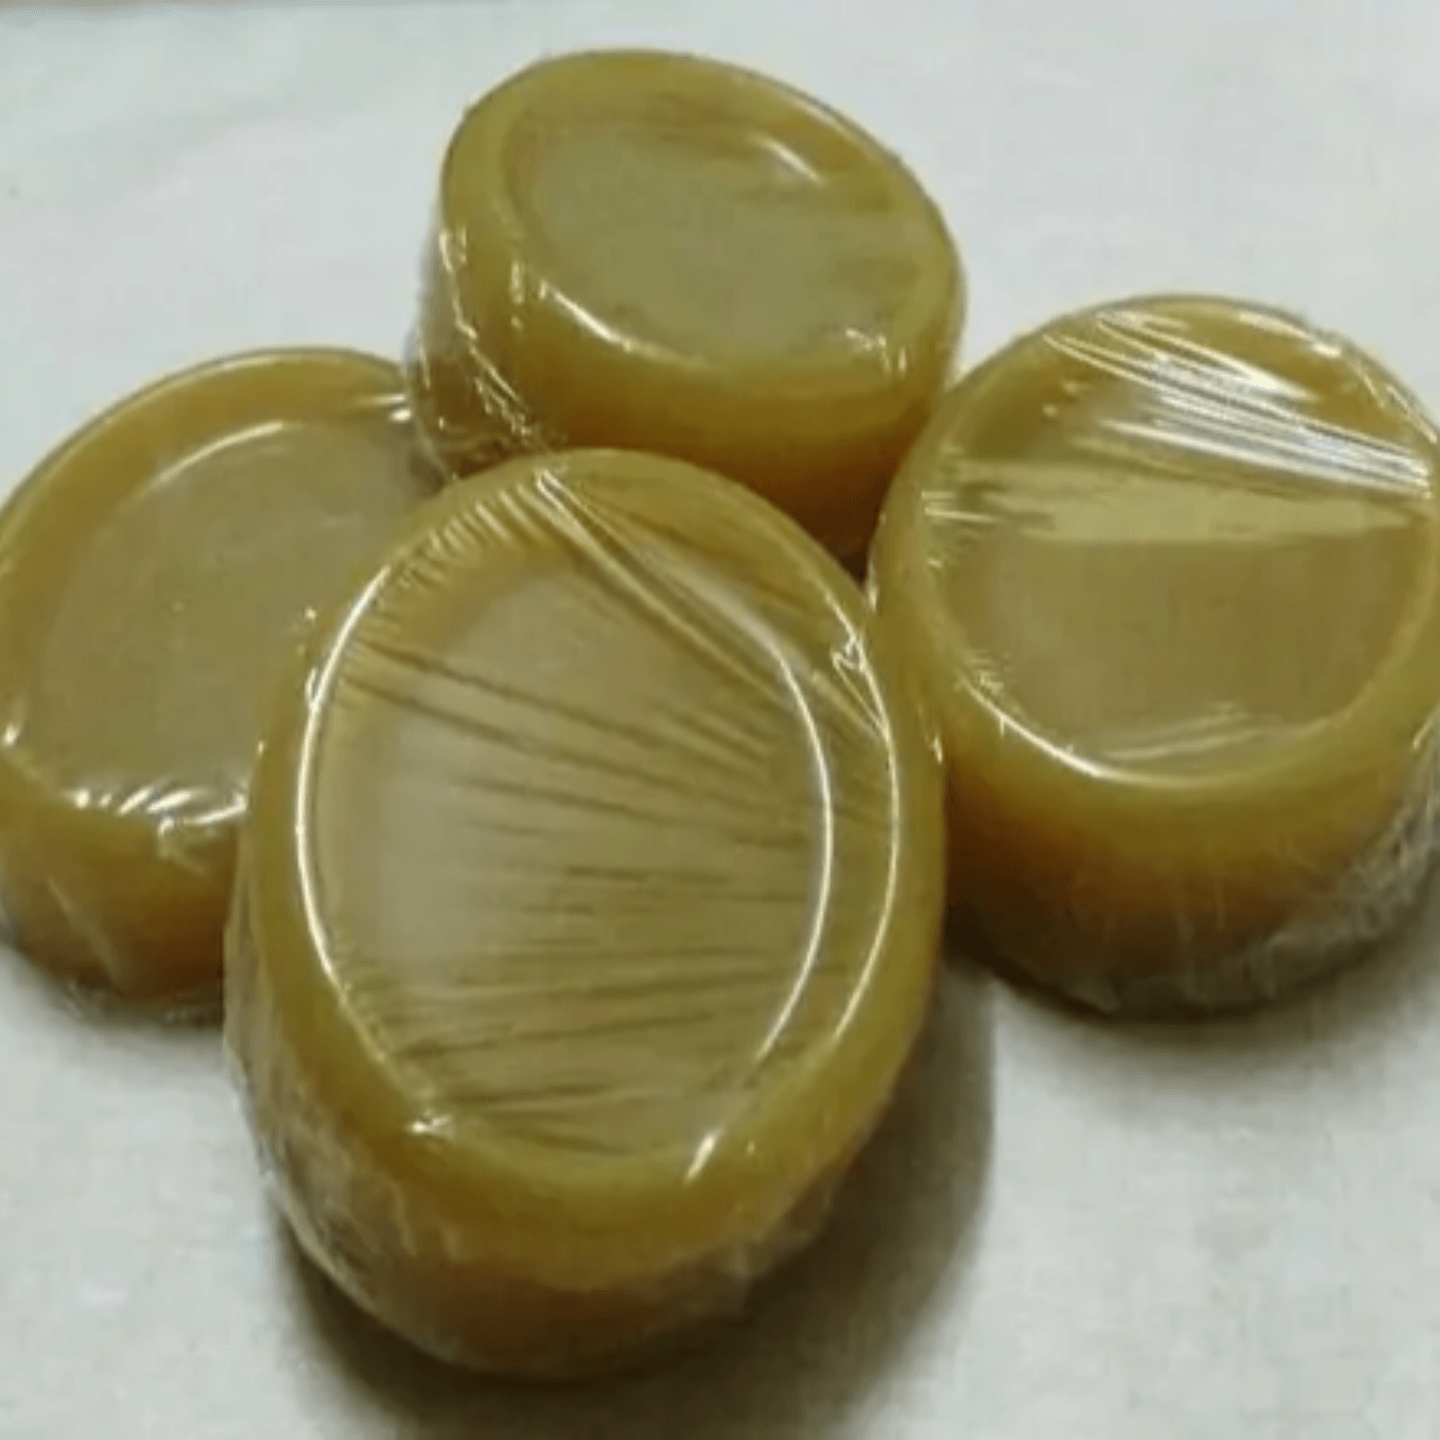 Coconut Oil Soap with Multani mitti - 4 nos * 75gms